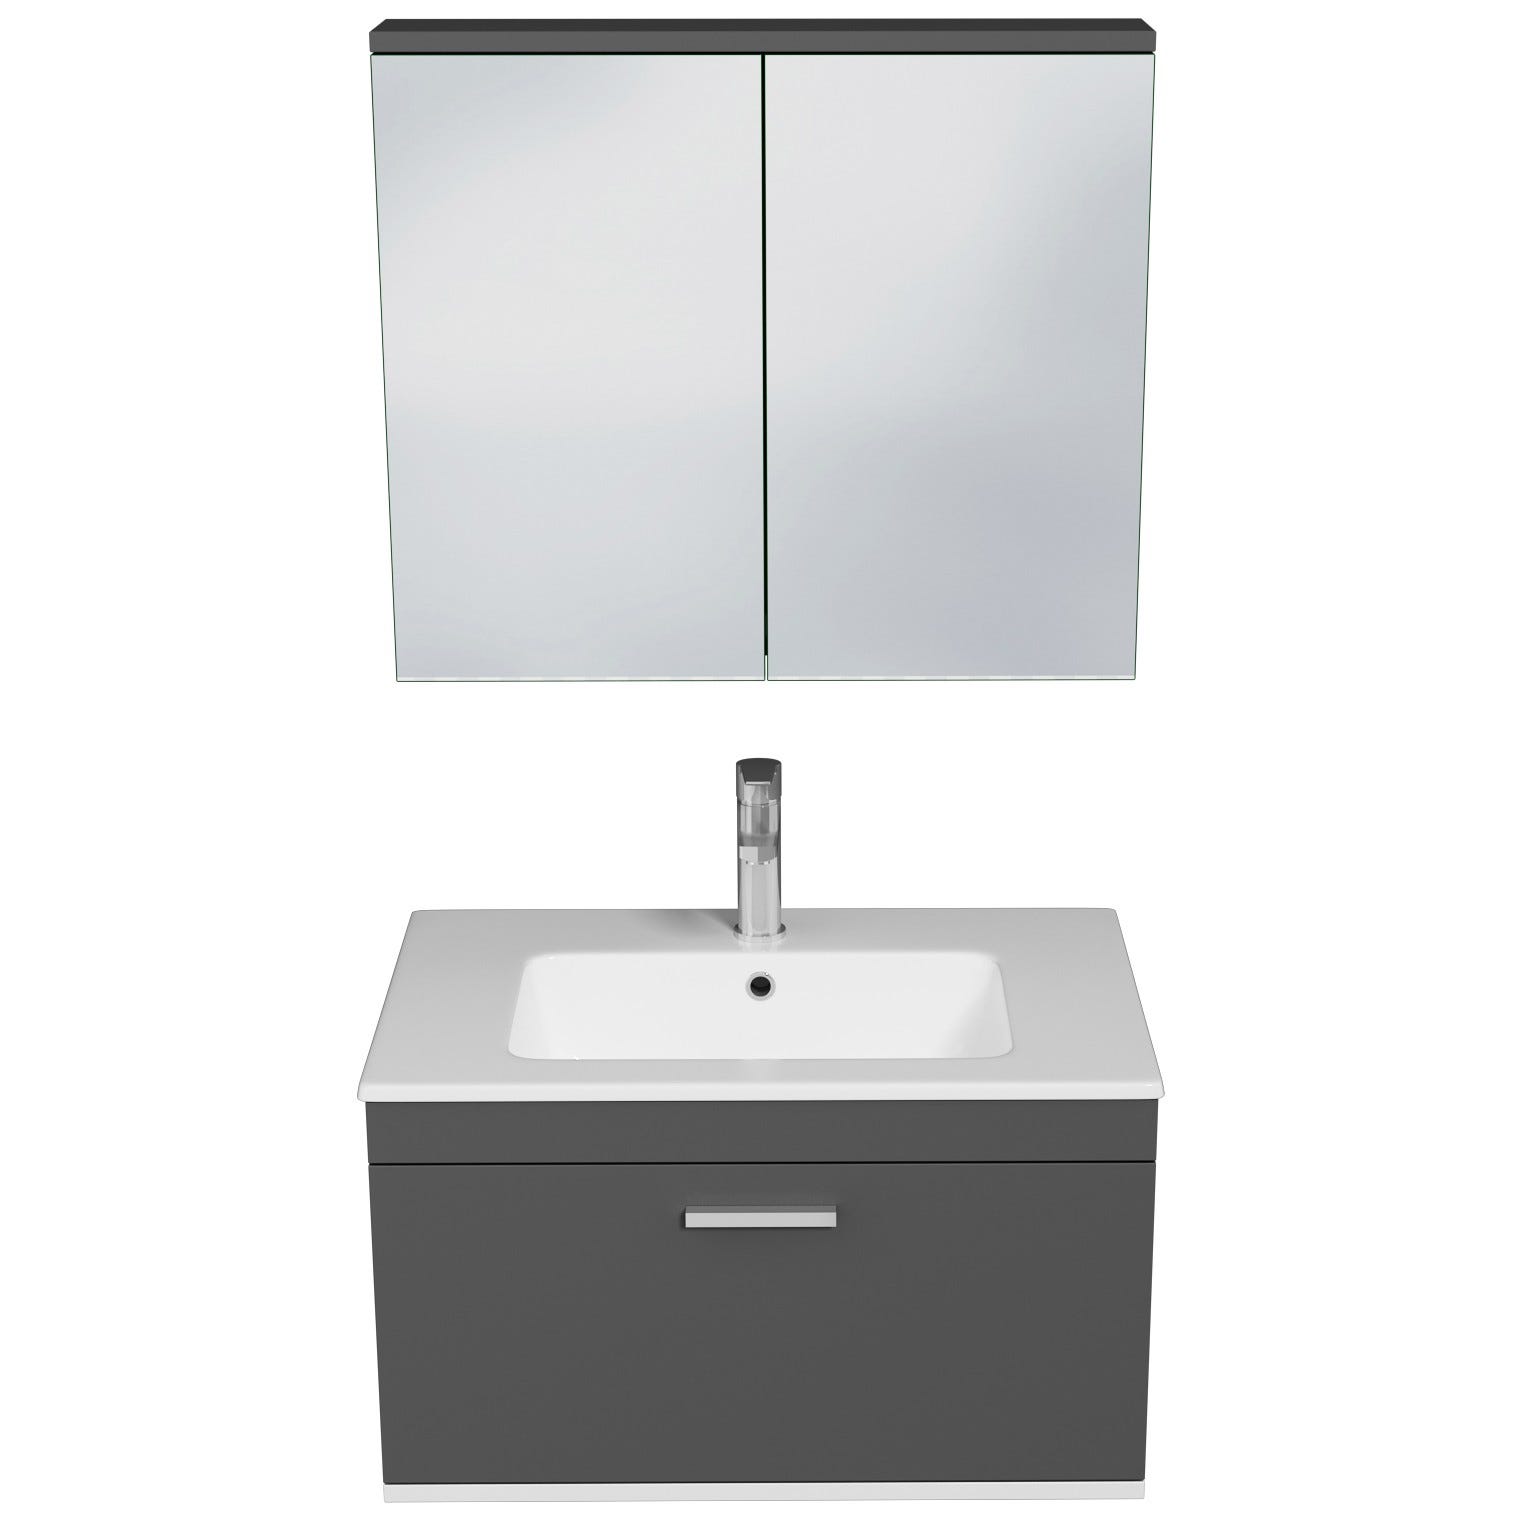 RUBITE Meuble salle de bain simple vasque 1 tiroir gris anthracite largeur 70 cm + miroir armoire 3